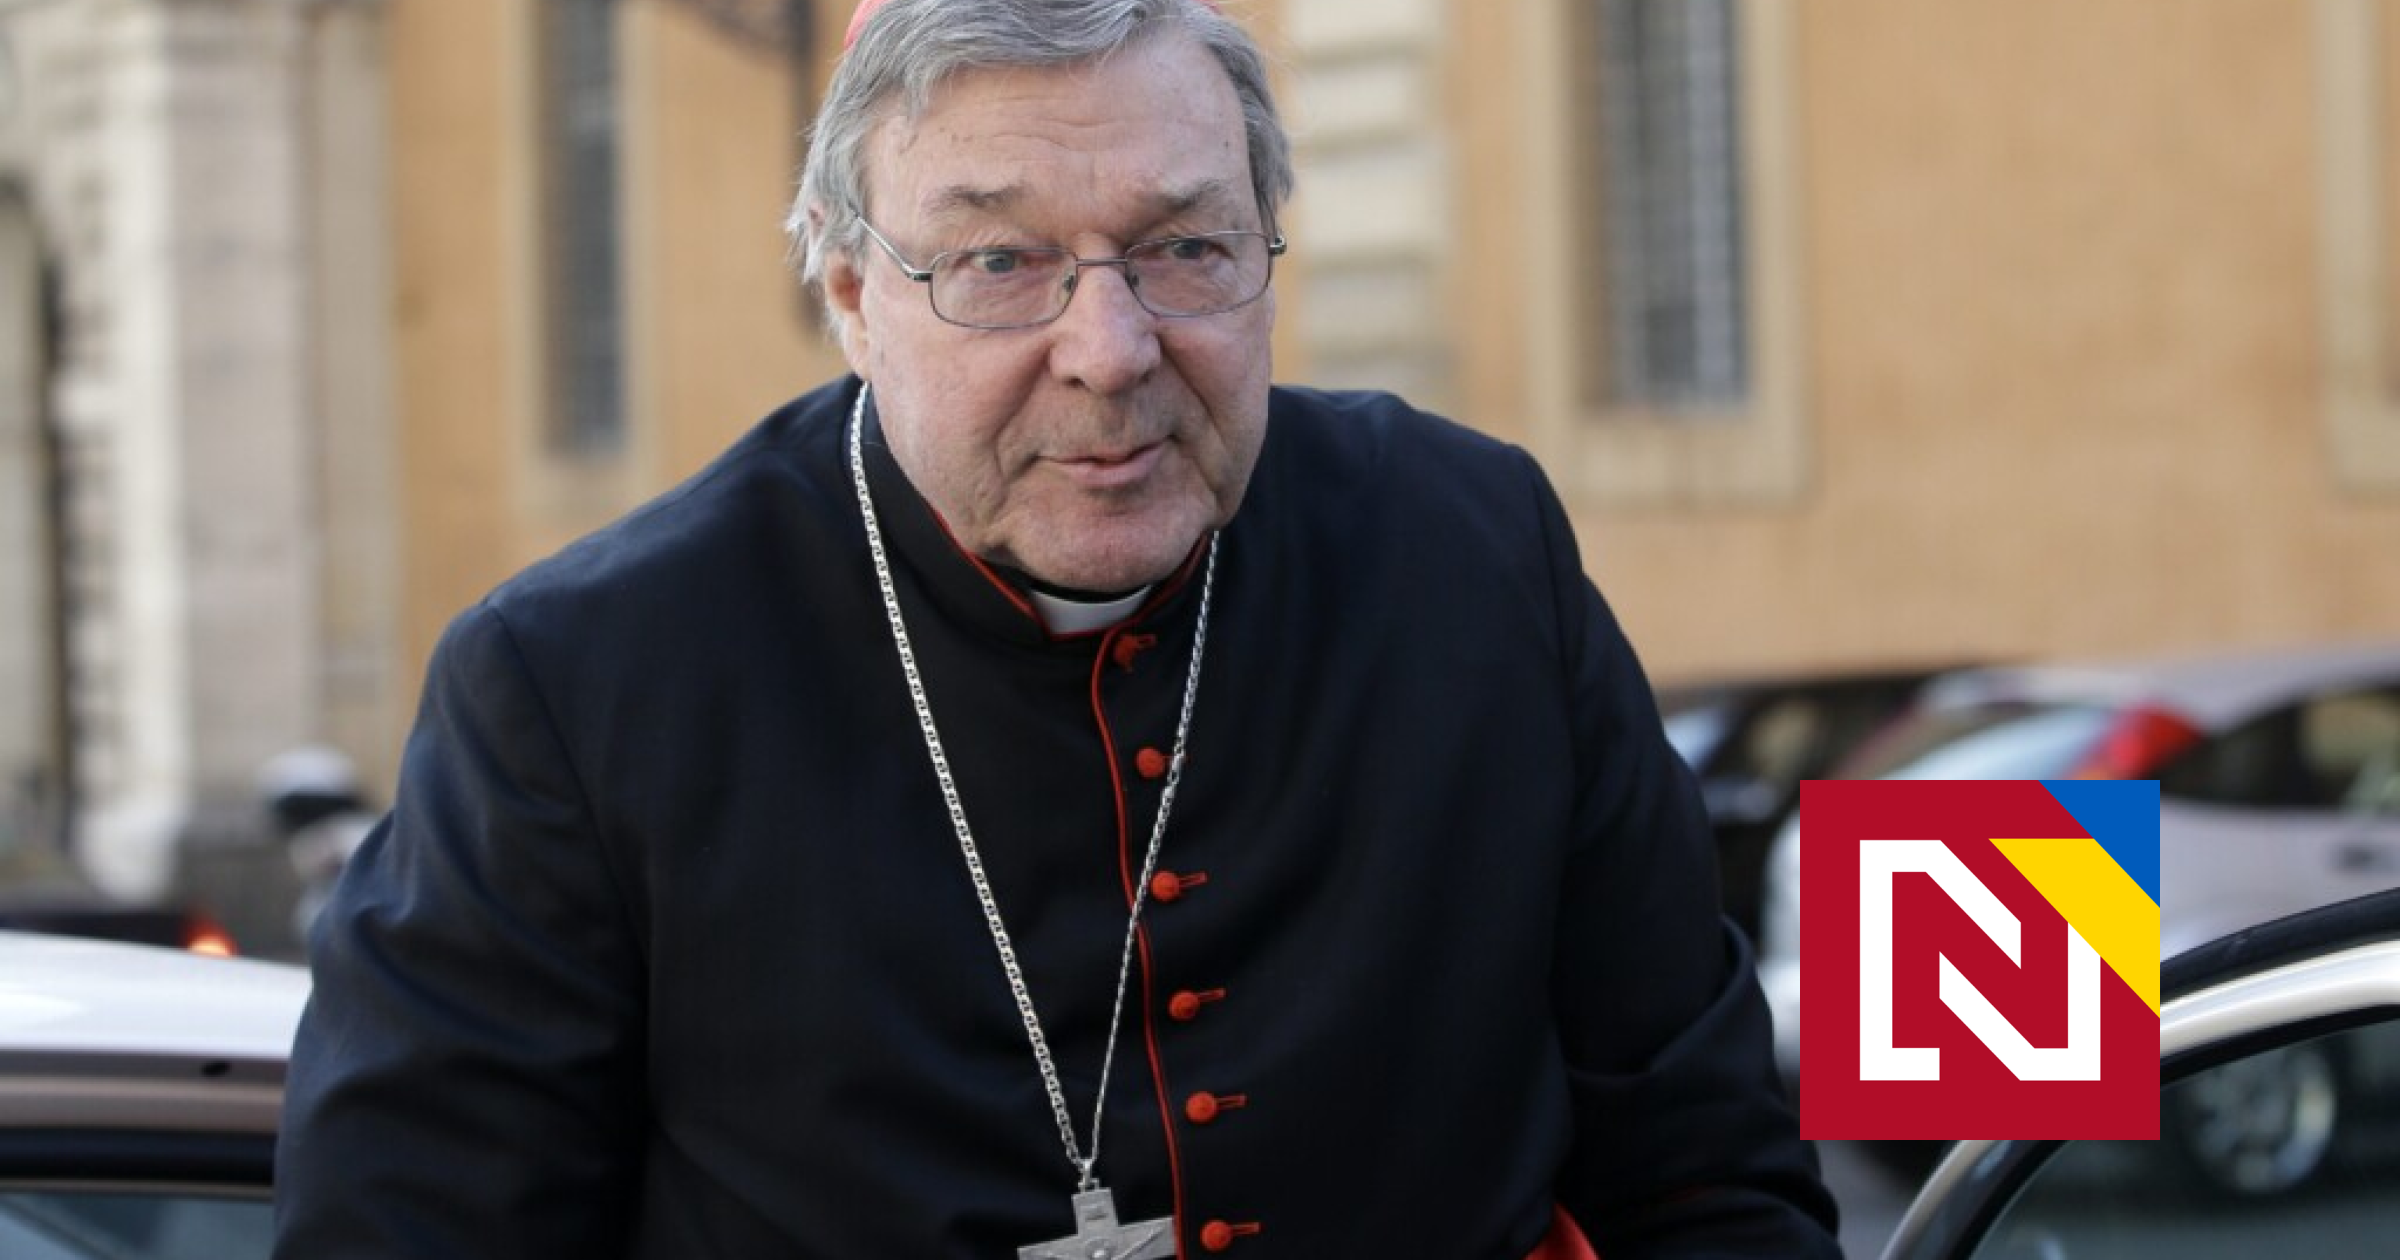 Bol verný služobník, povedal pápež o zosnulom kardinálovi, pre ktorého boli interrupcie horšie ako znásilňovanie detí